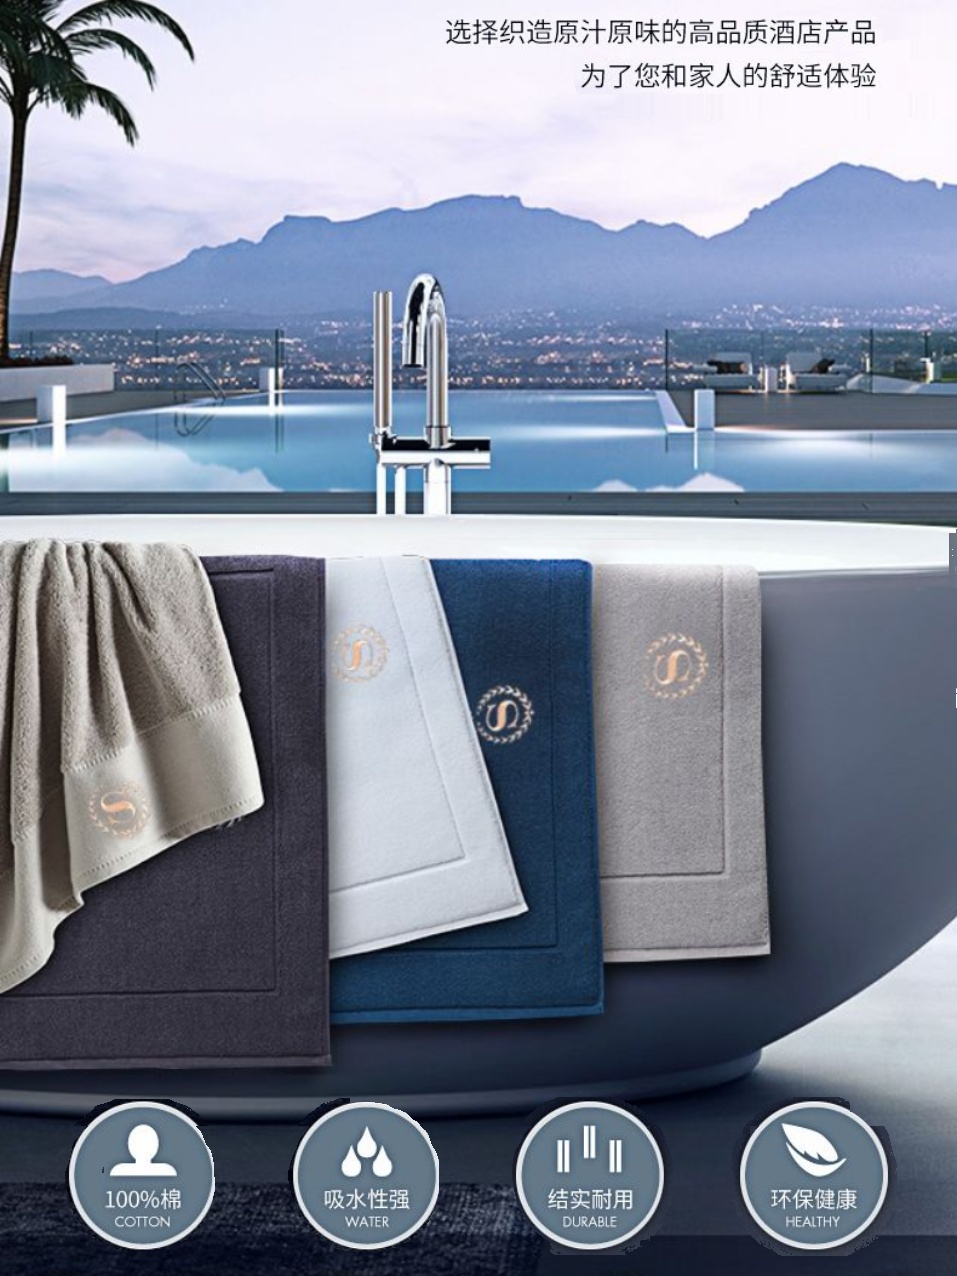 新品 五星级酒店浴室地巾全棉吸水卫浴防滑毛巾料地垫家用 可机洗